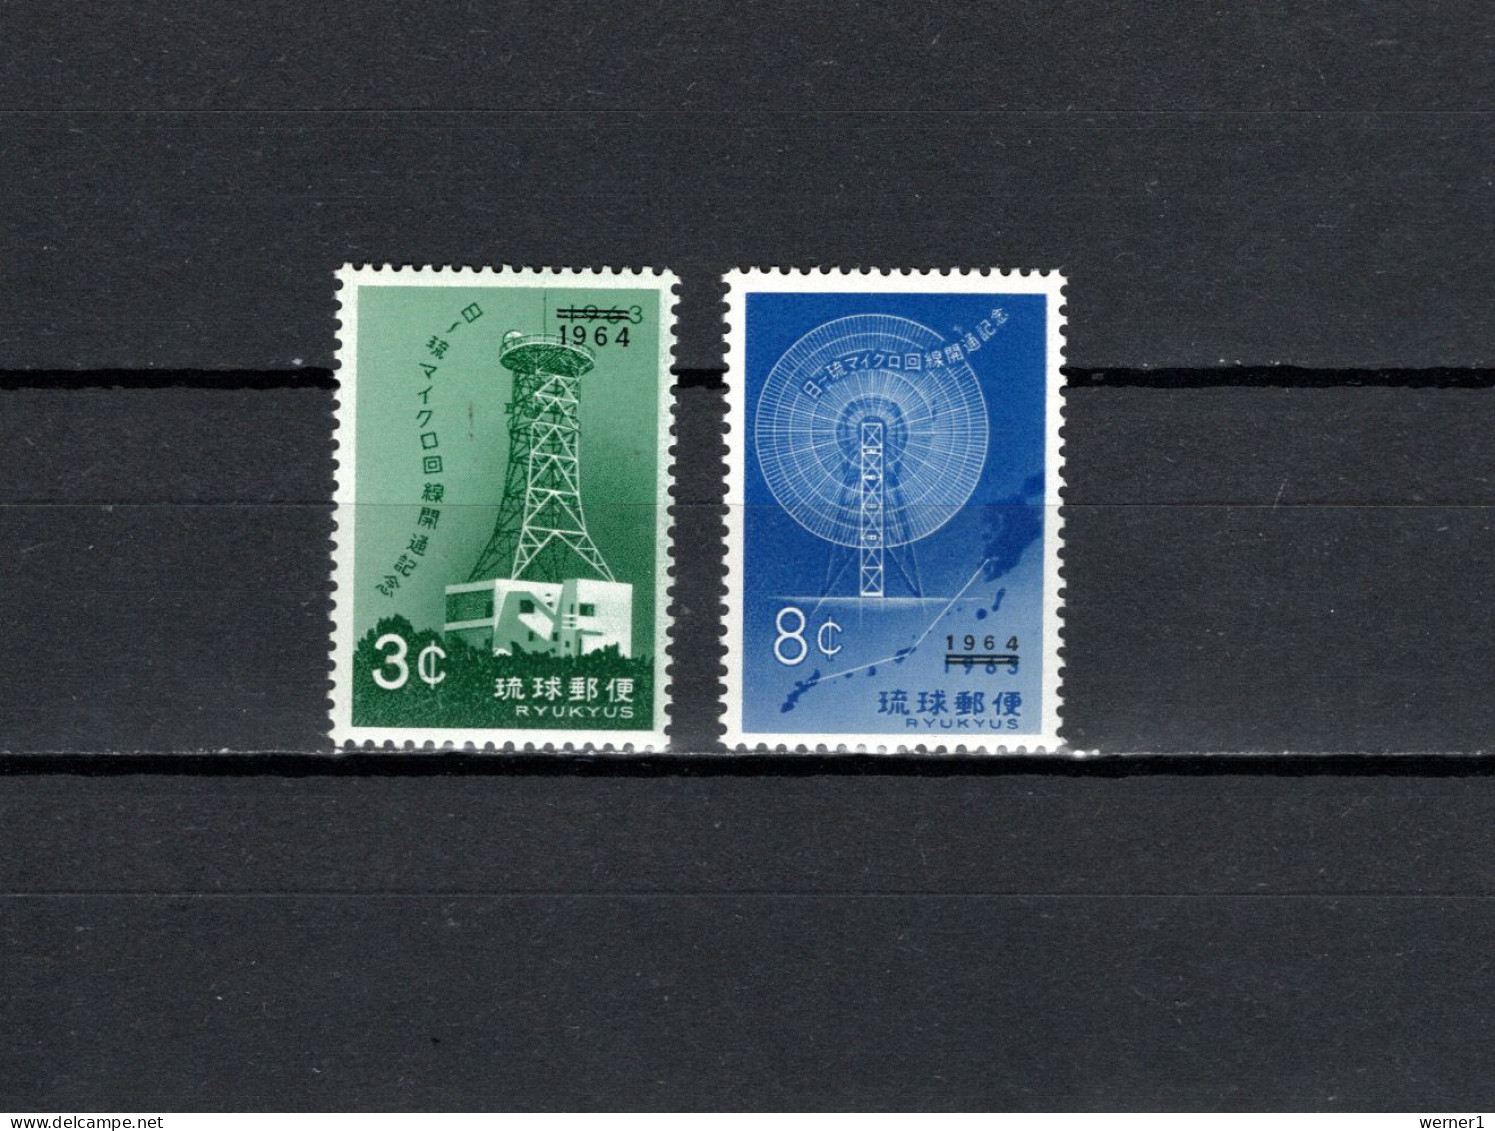 Ryu-kyu Islands 1964 Space, Telecommunication Set Of 2 MNH - Asia